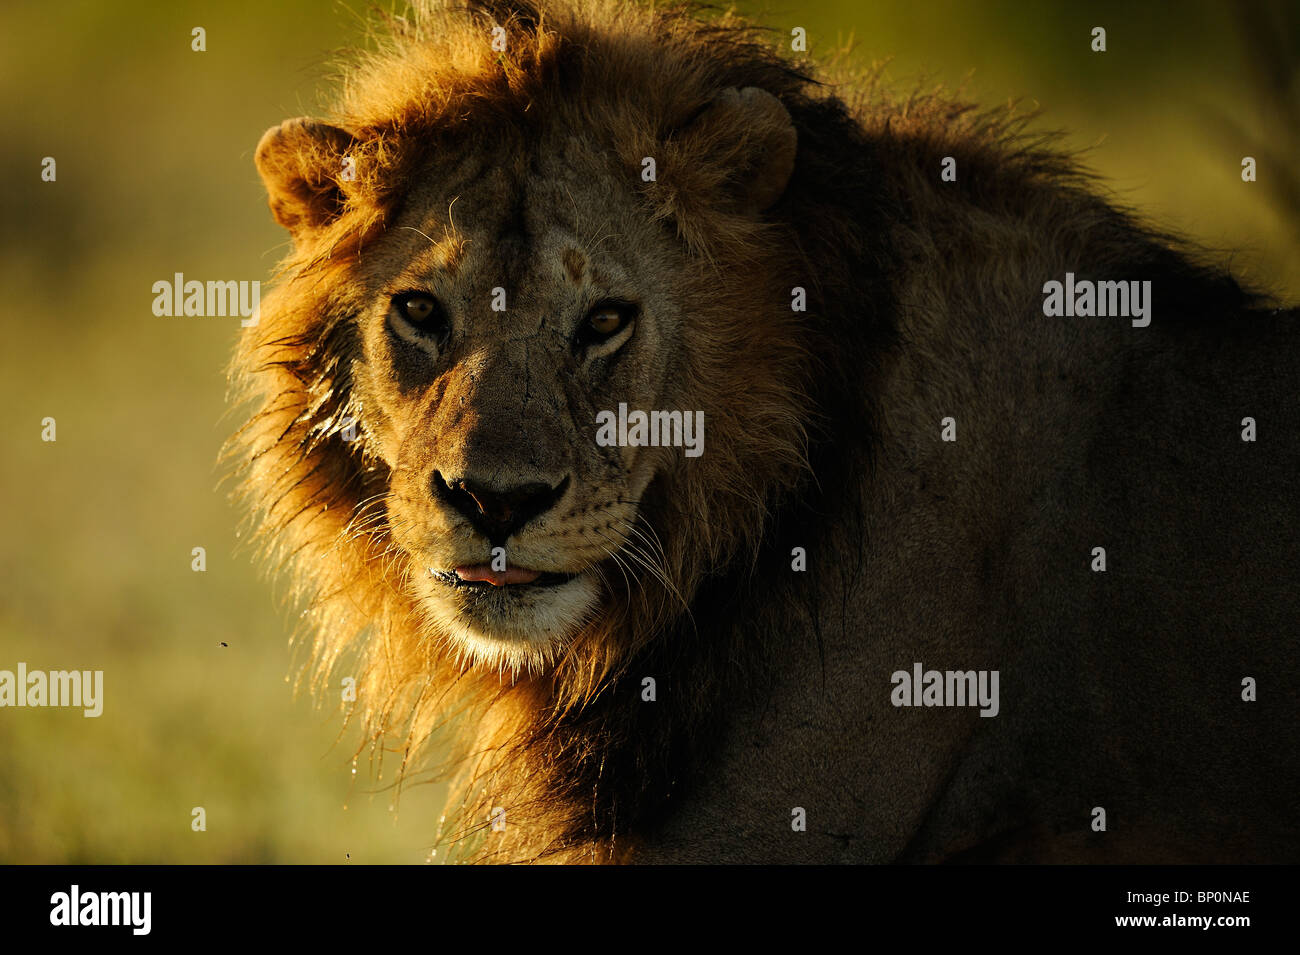 Male Lion portrait at sunset, Ndutu, Tanzania Stock Photo